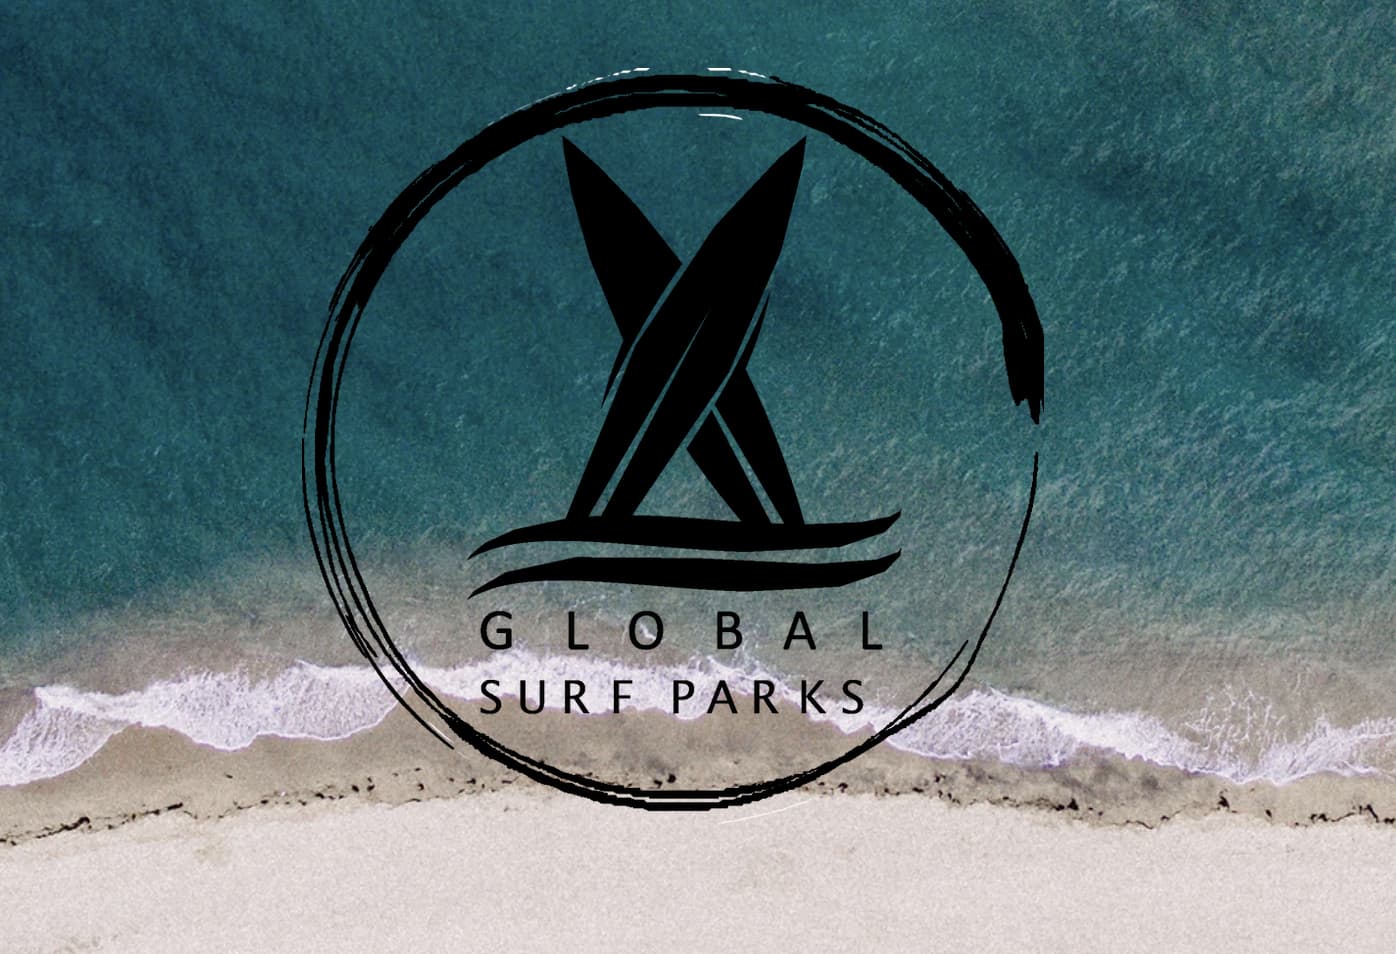 Global Surf Parks